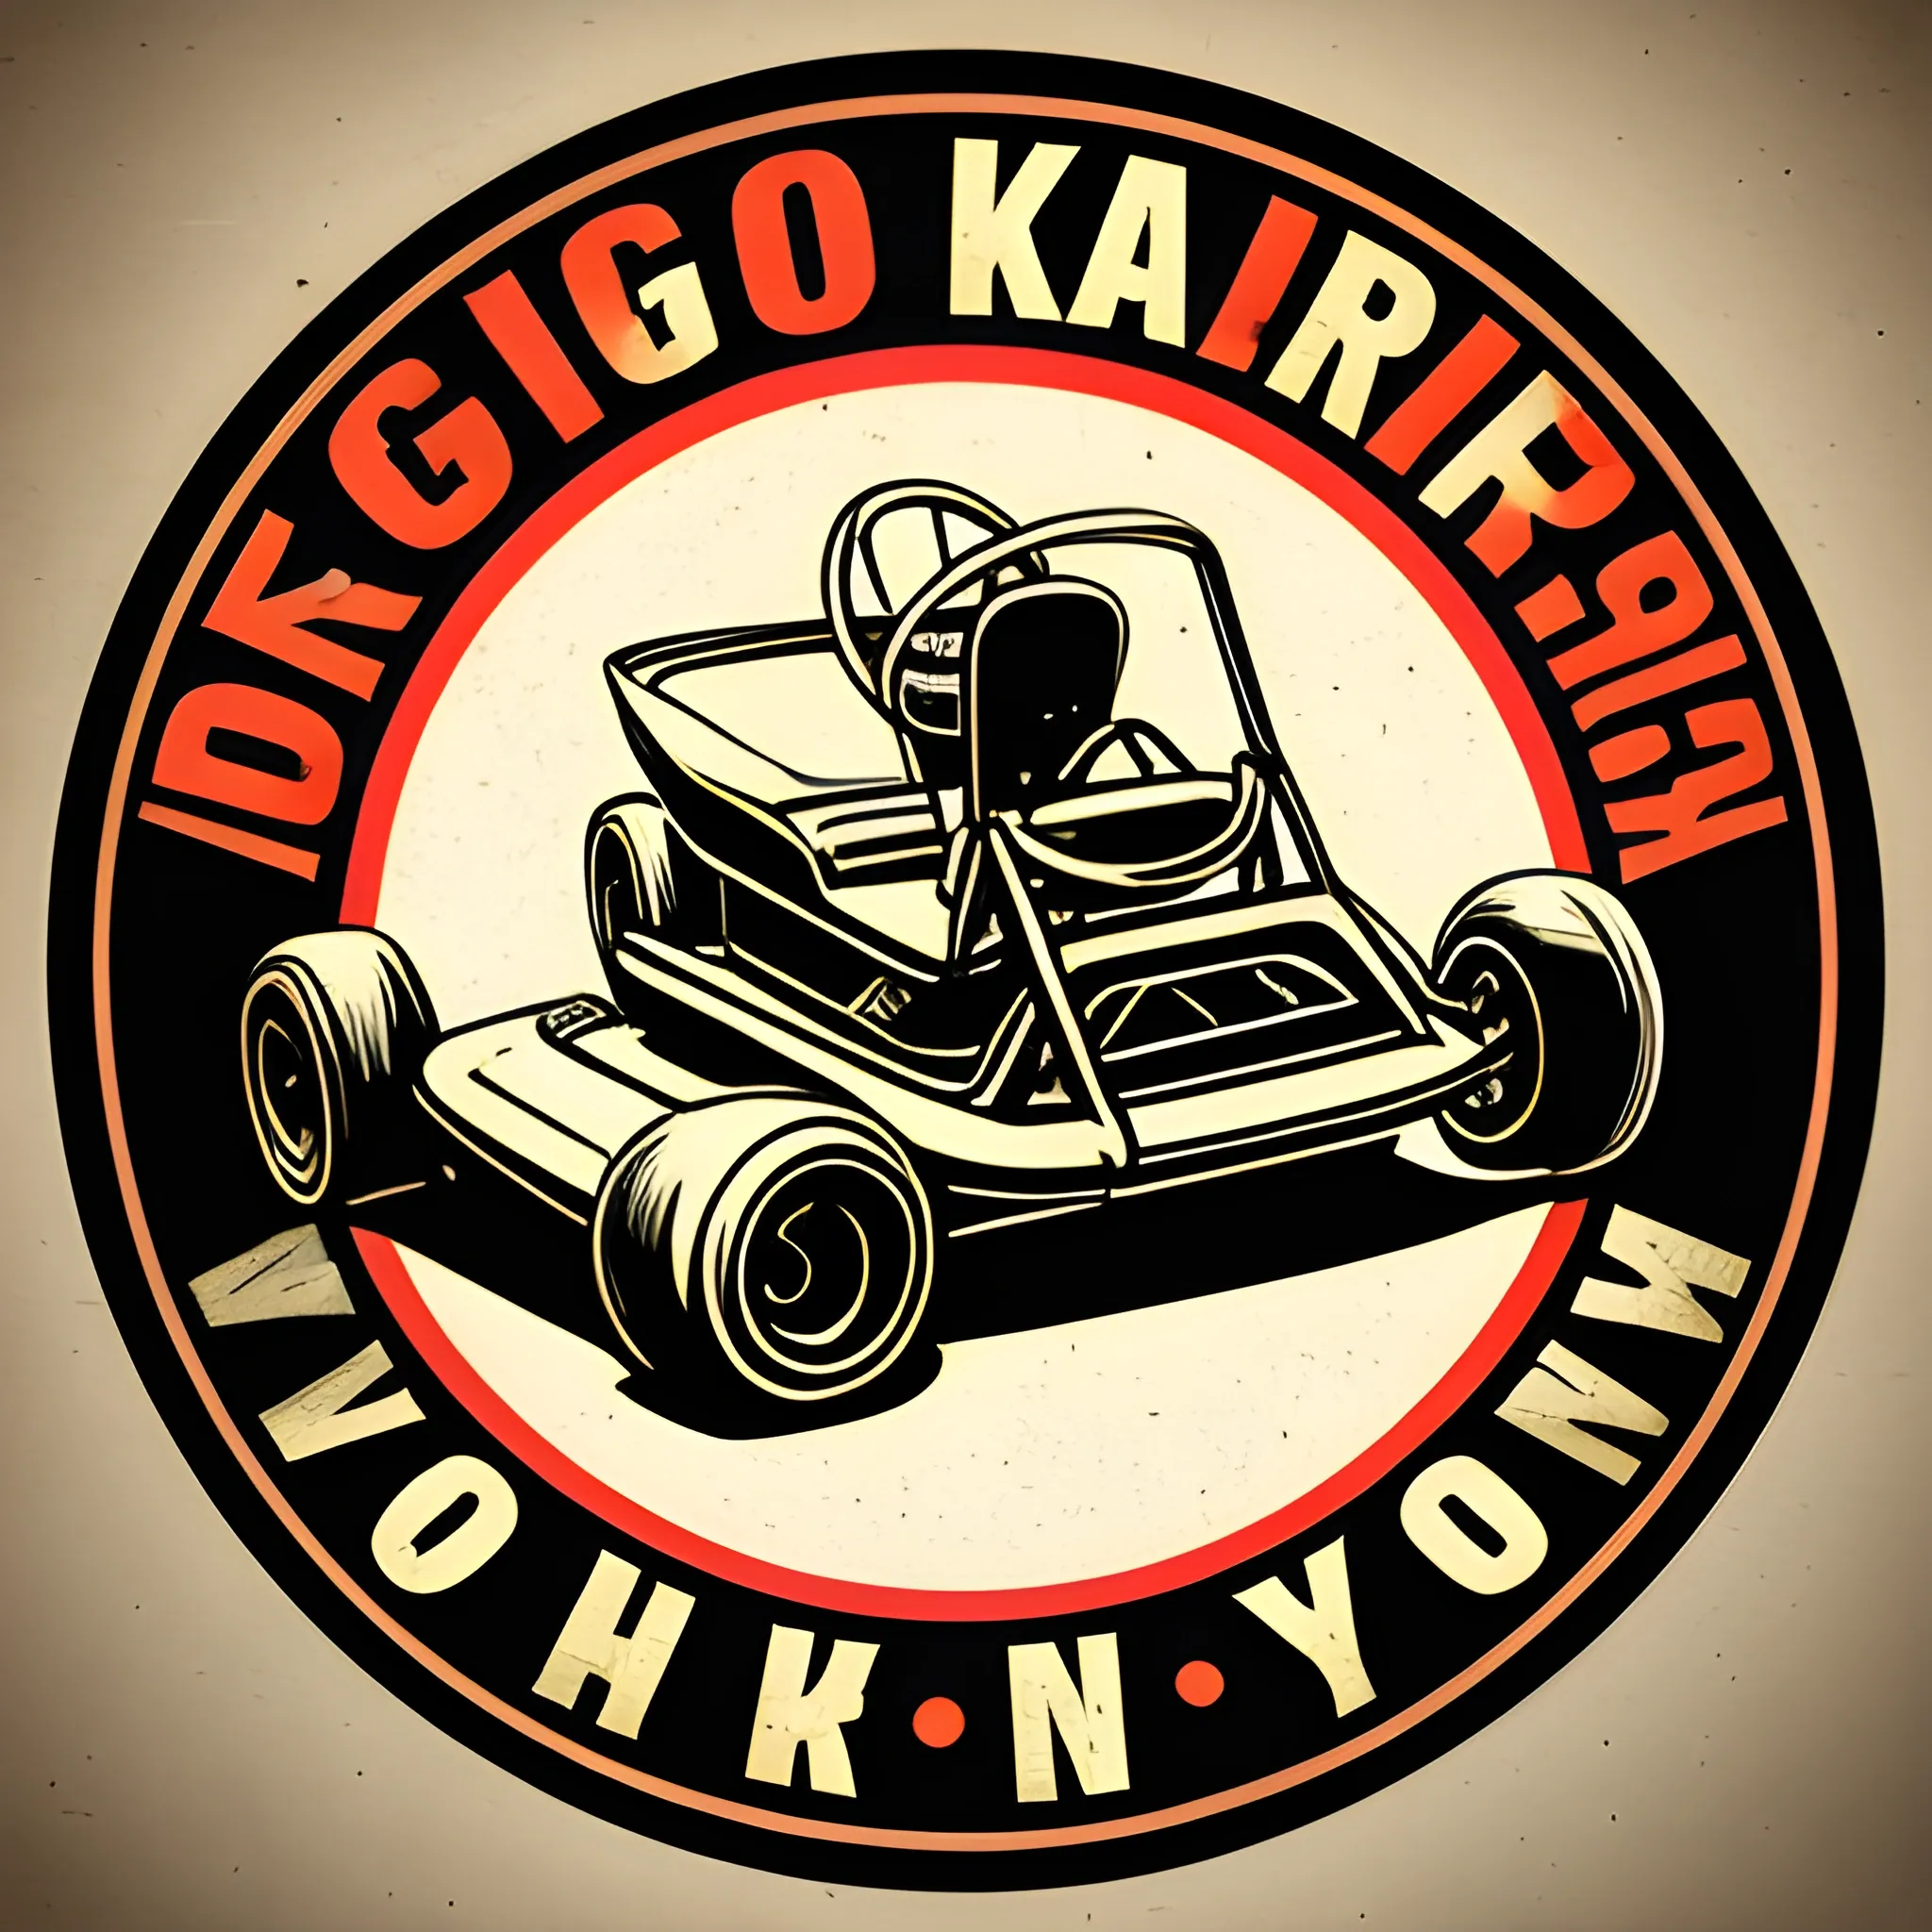 Vintage go kart logo